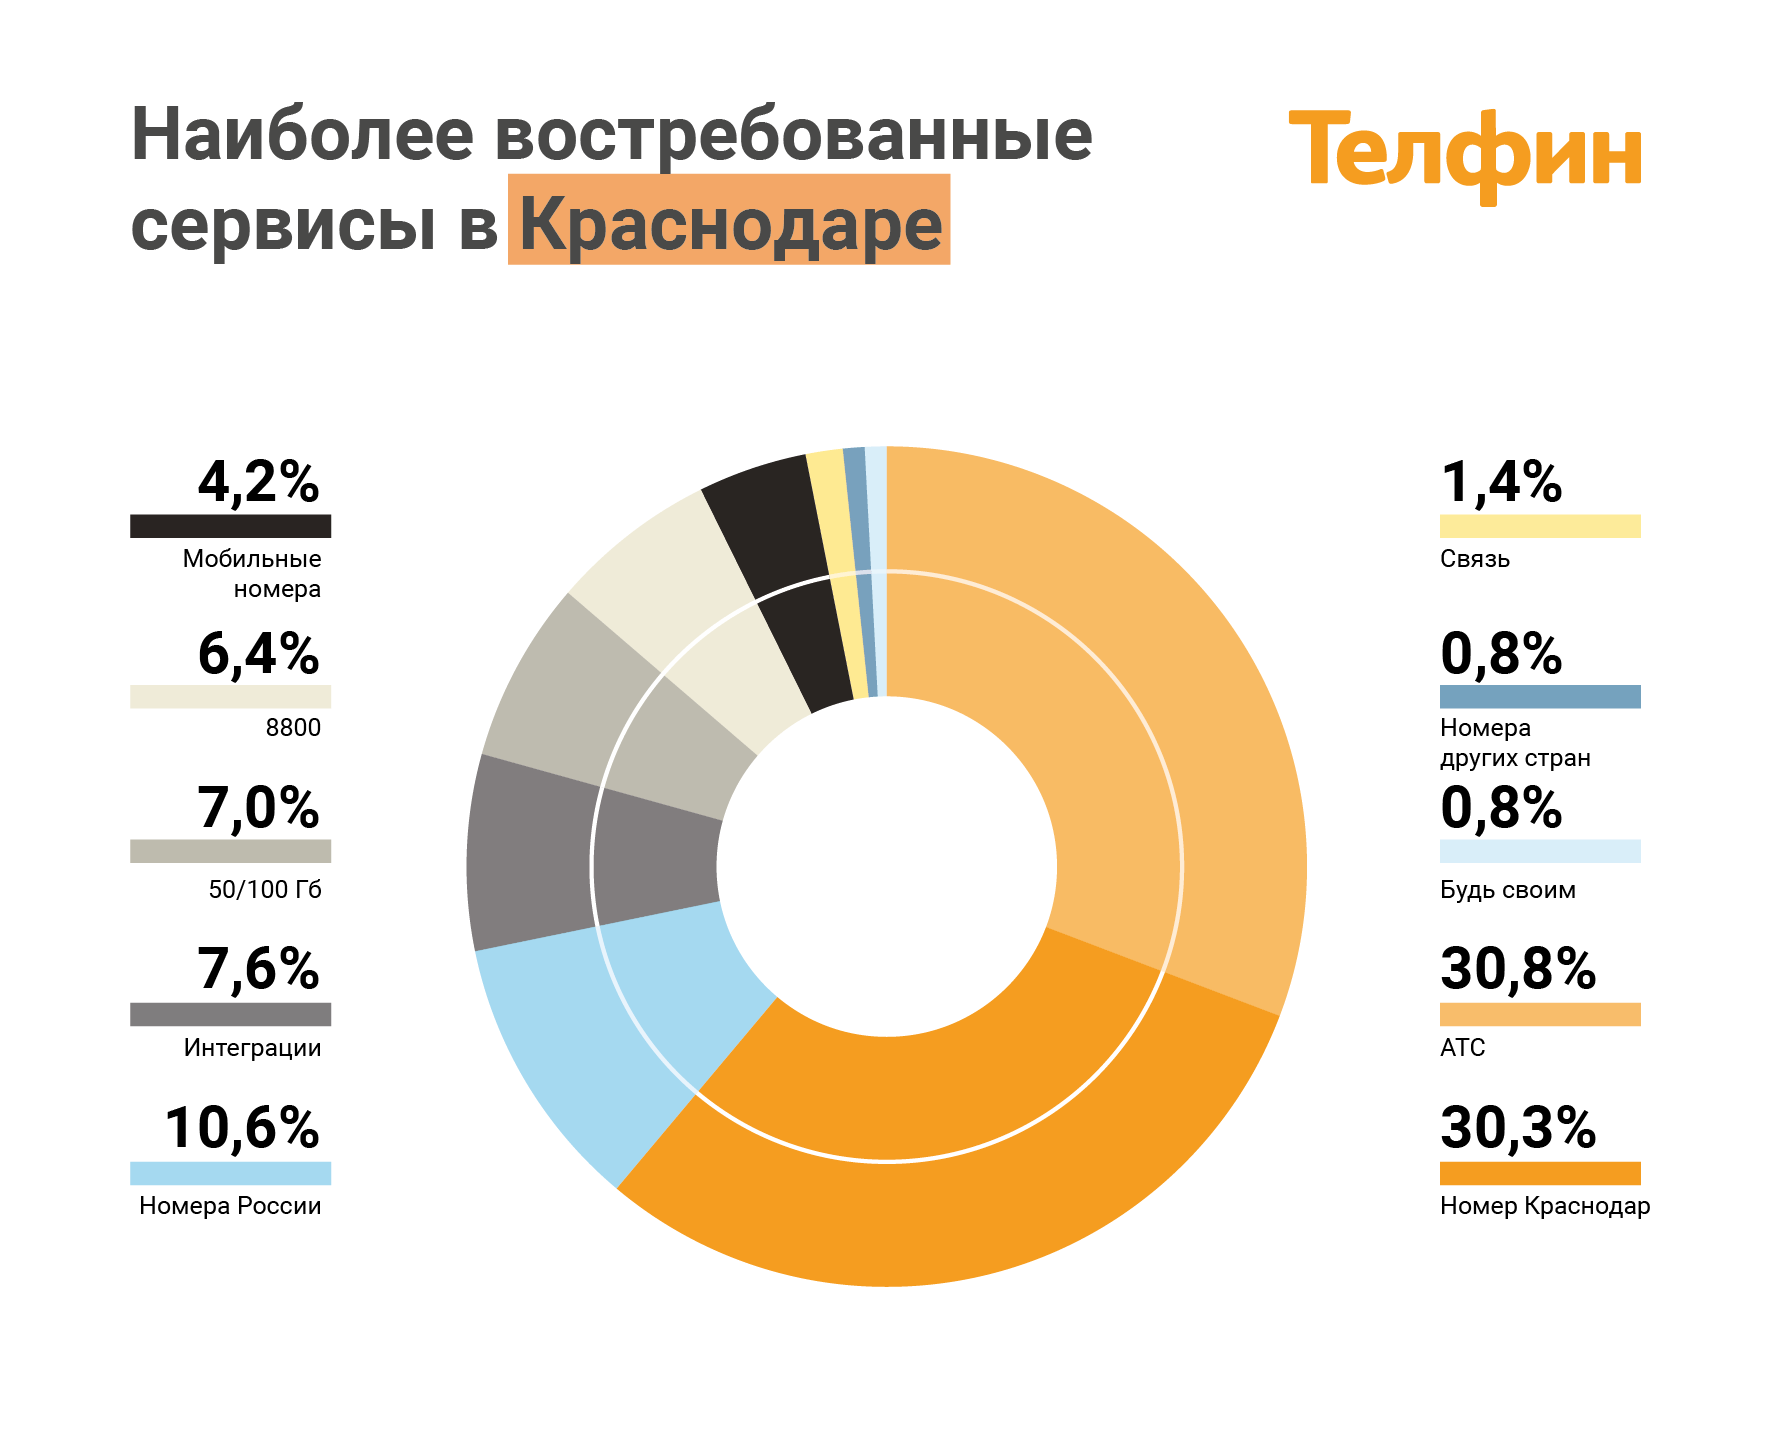 Наиболее востребованные сервисы ip-телефонии в Краснодаре